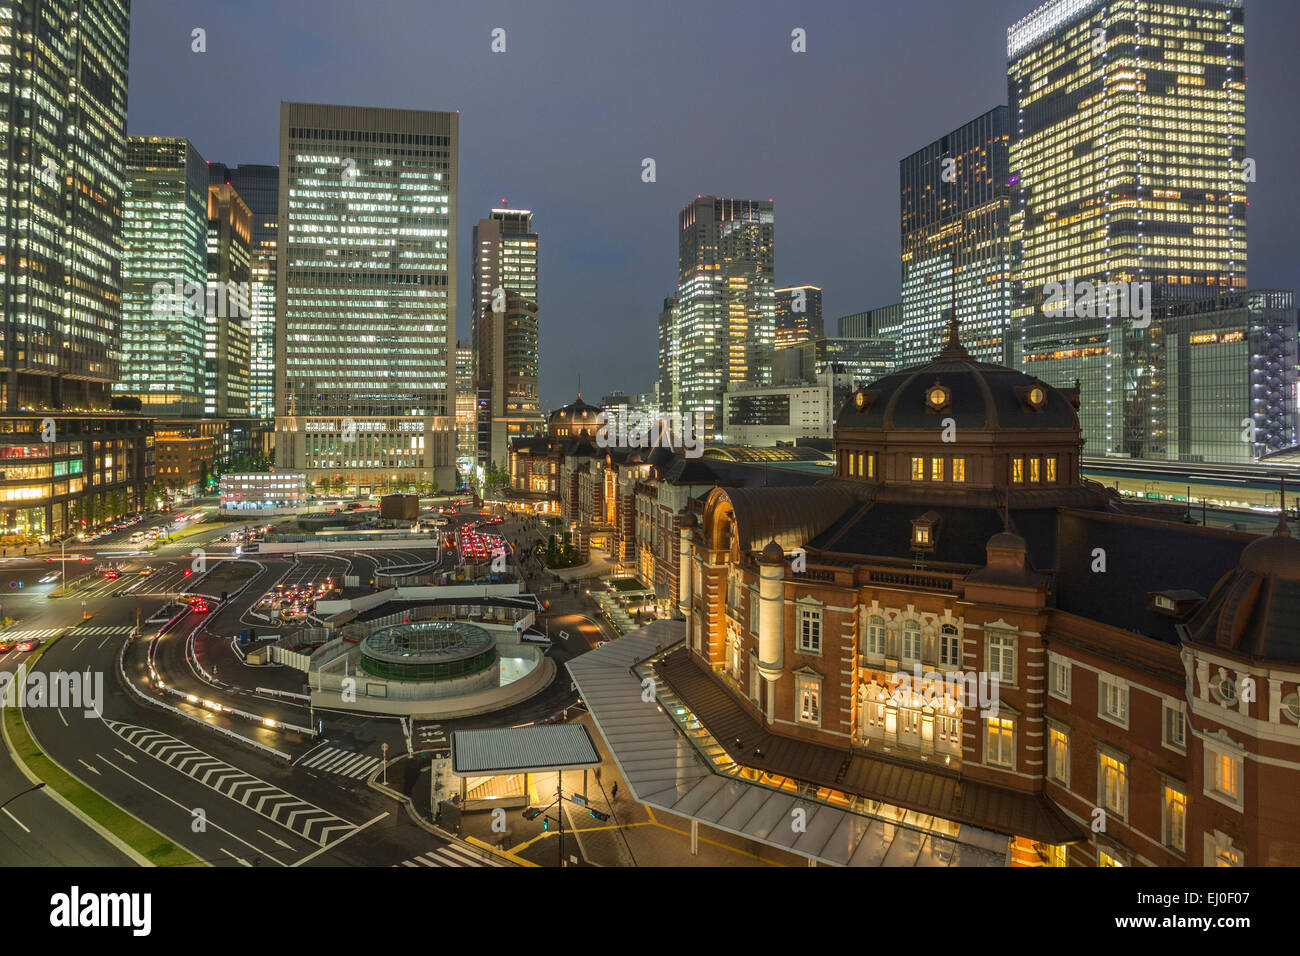 Zentrum, City, Japan, Asien, Landschaft, Station, Tokio, Architektur, bunt, crossing, Innenstadt, Finanzen, Marunouchi, Himmel-Schrott Stockfoto